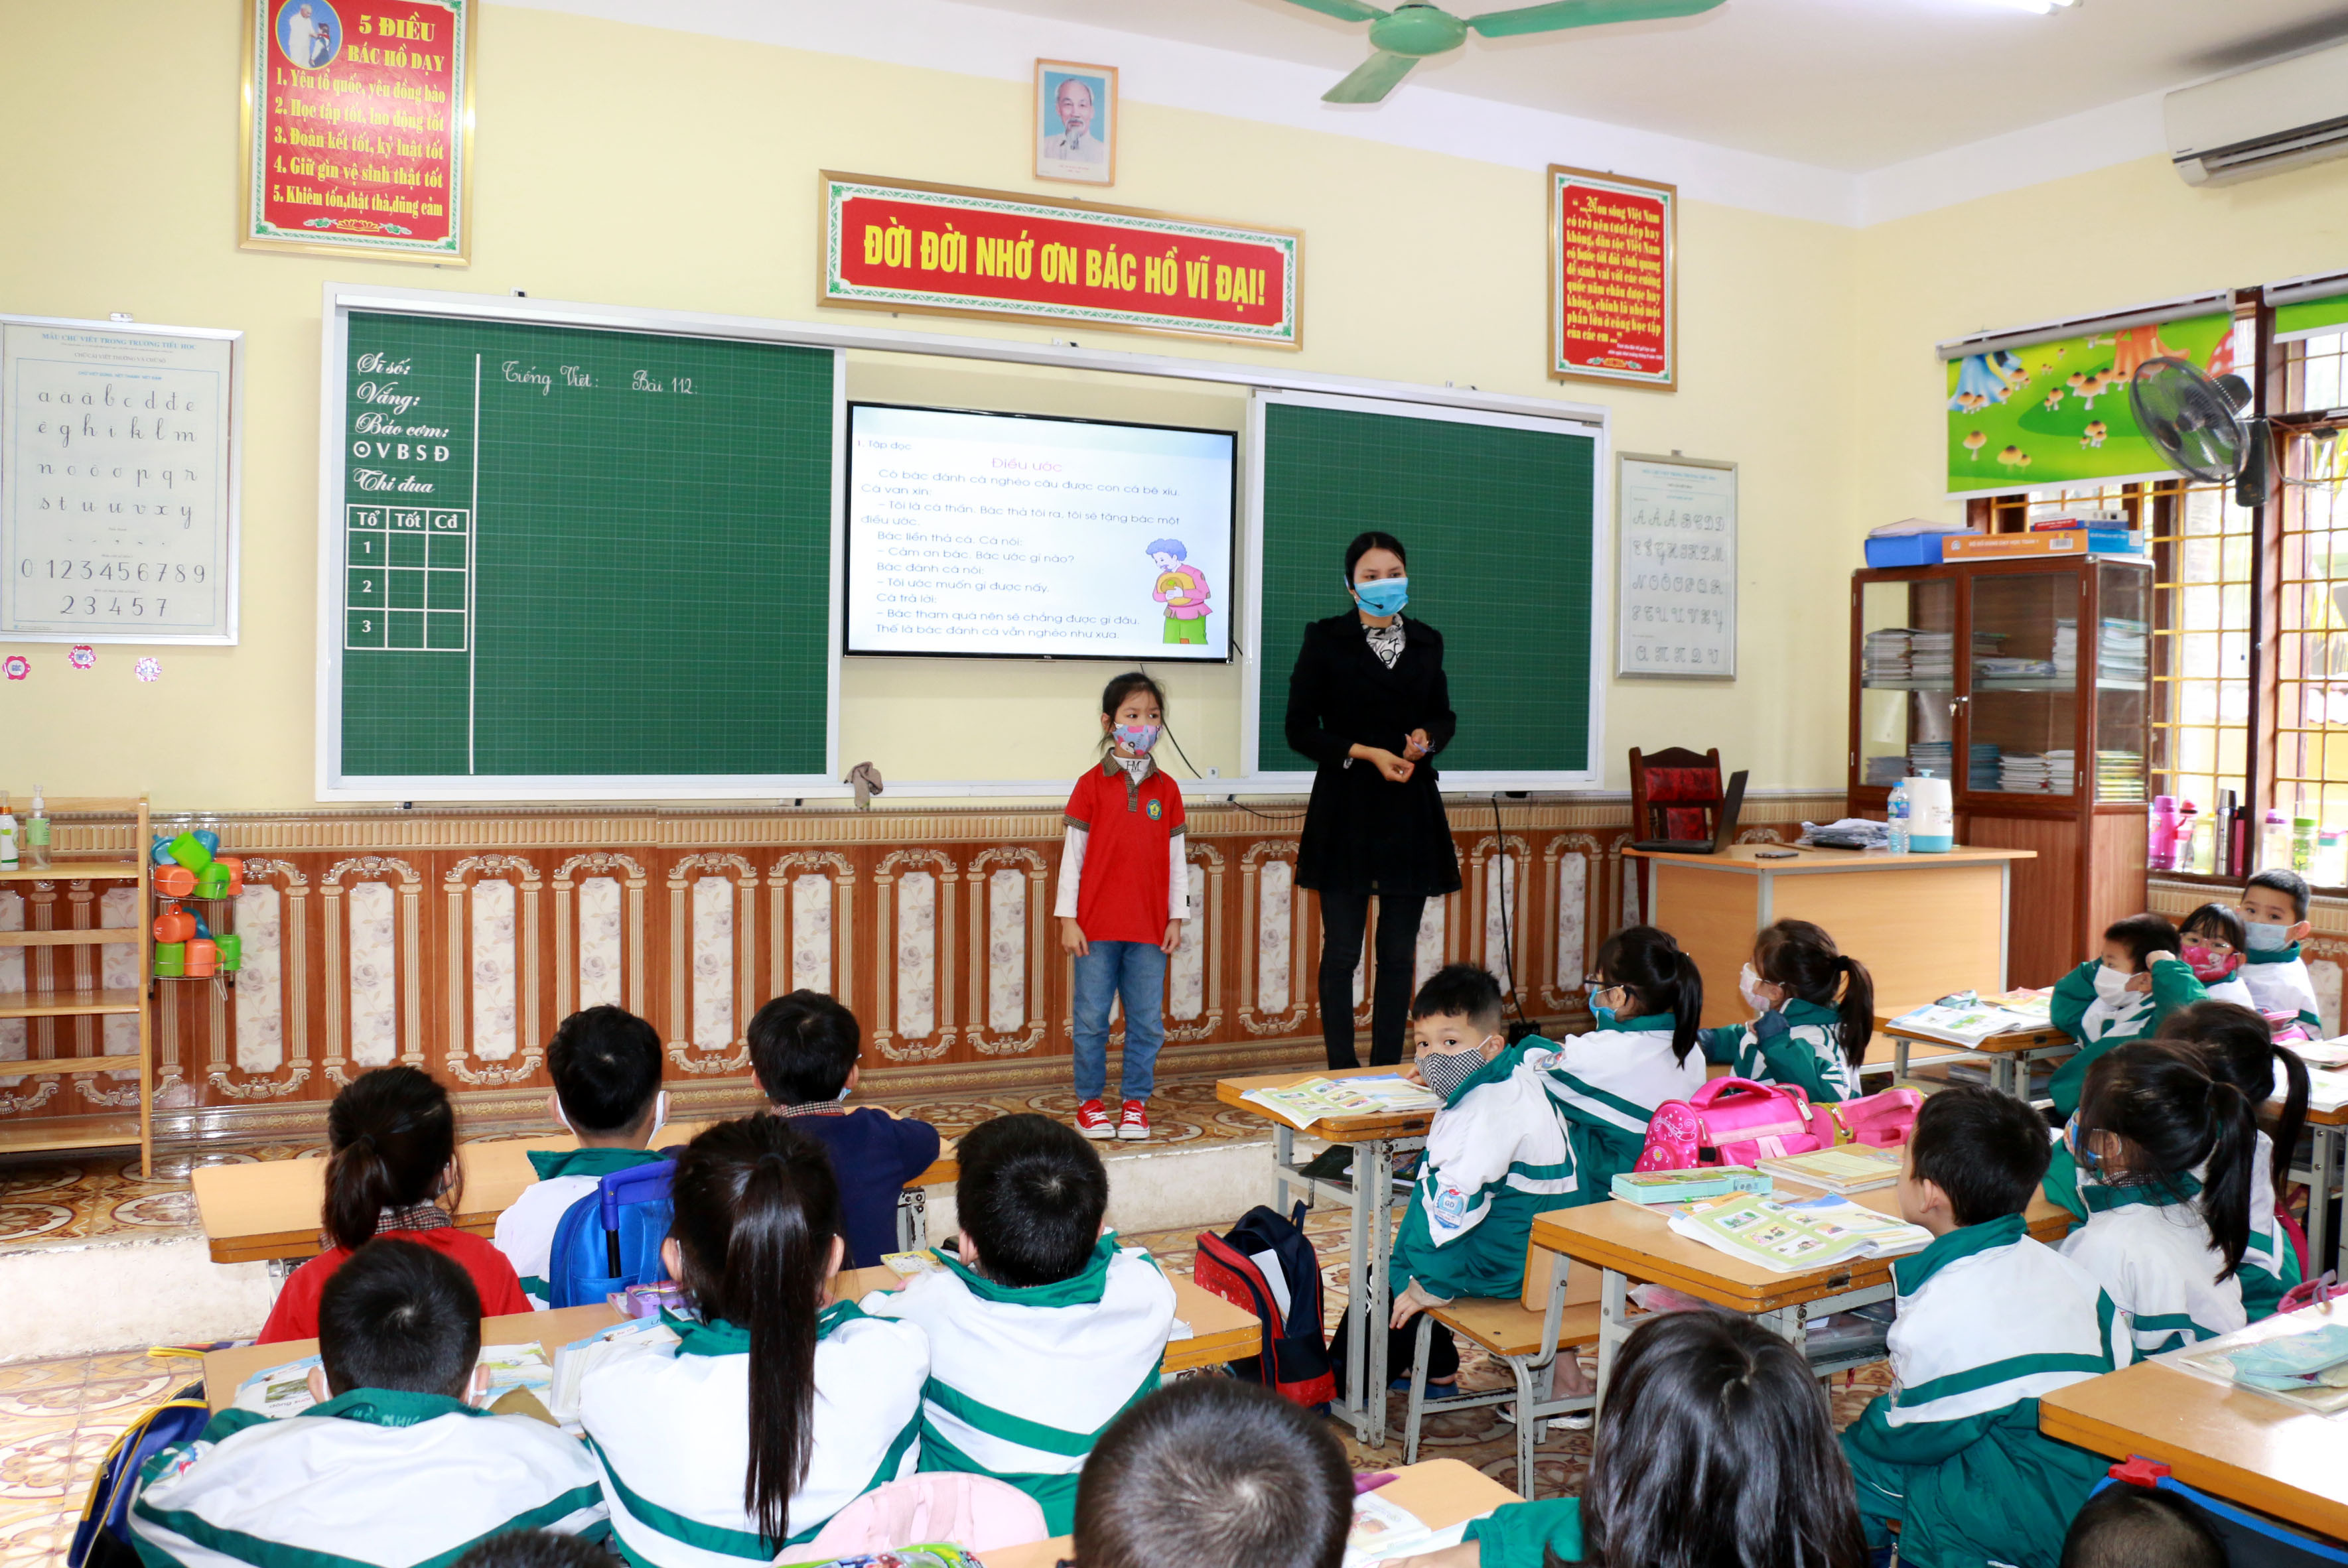 Ngày hôm nay, một số trường học trên địa bàn tỉnh Nghệ An đã yêu cầu học sinh đeo khẩu trang. Ảnh: MH